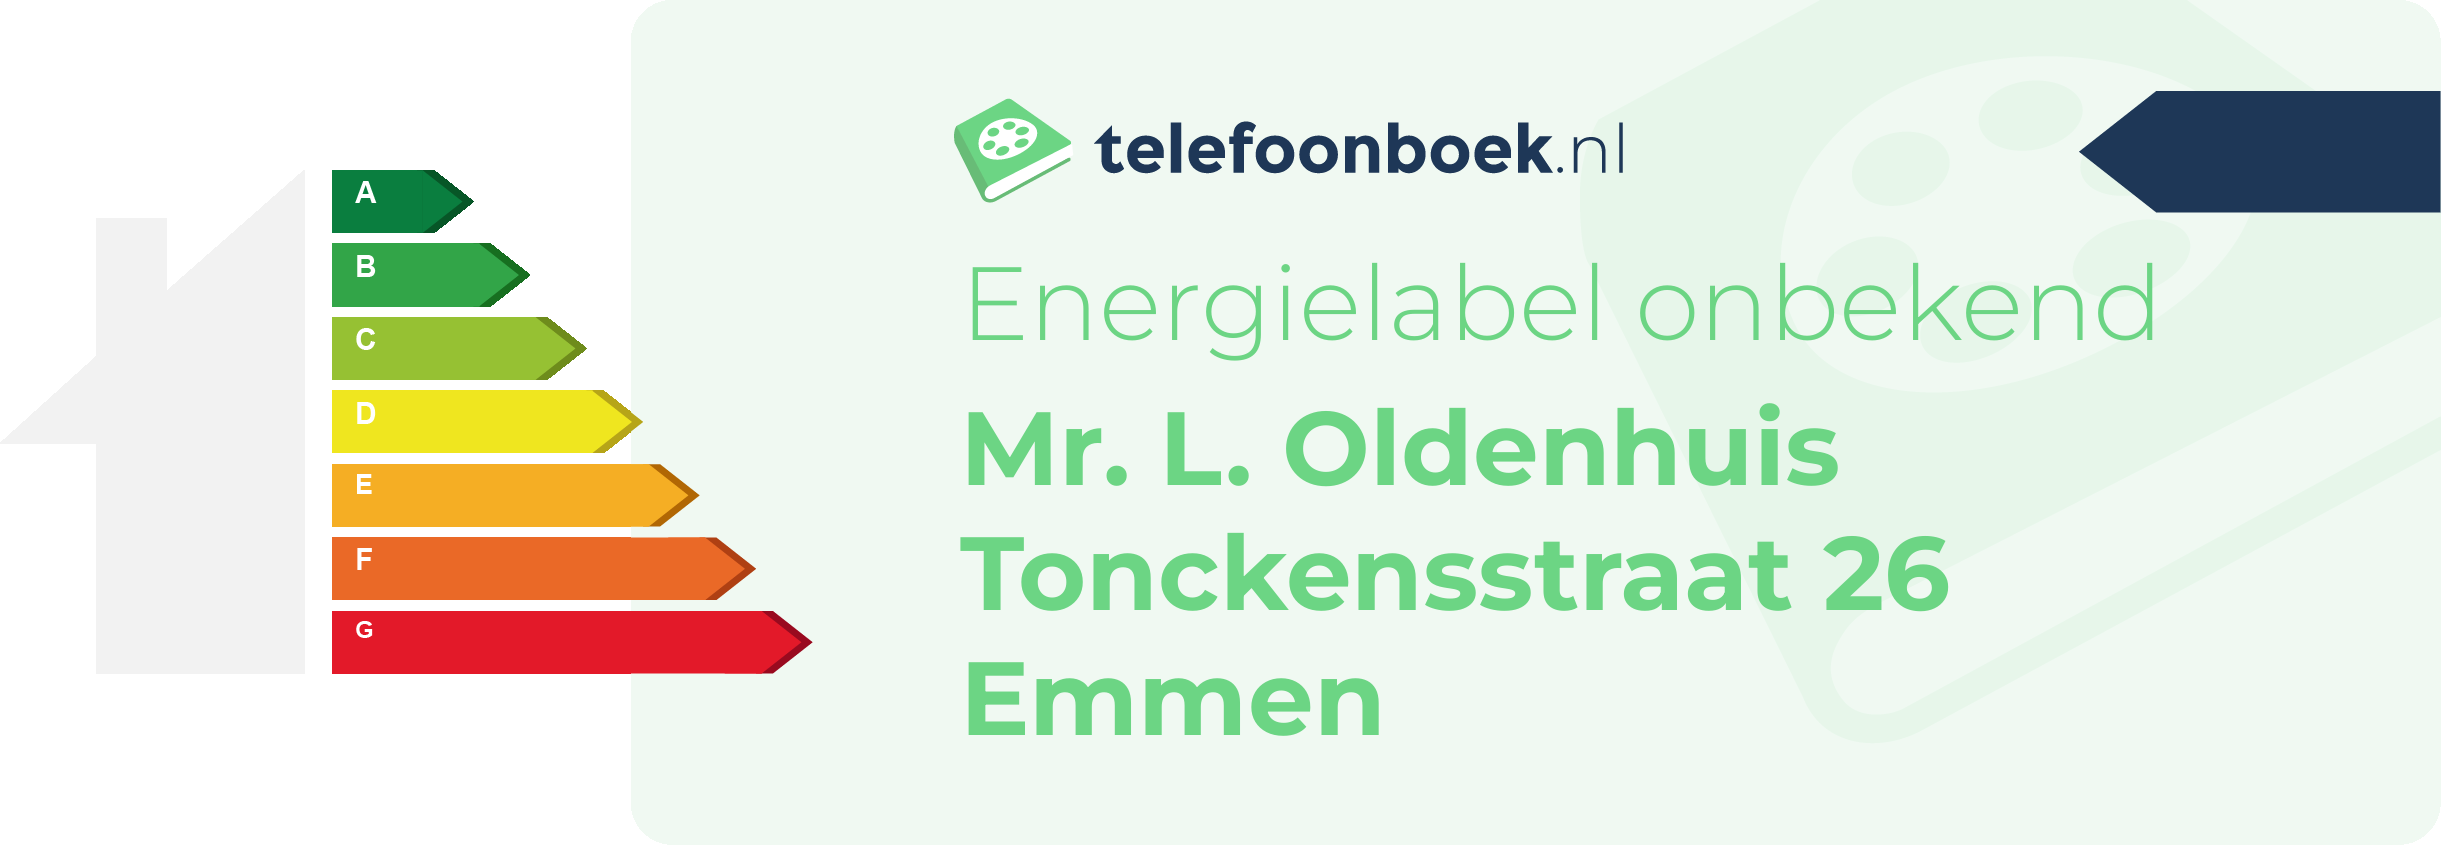 Energielabel Mr. L. Oldenhuis Tonckensstraat 26 Emmen